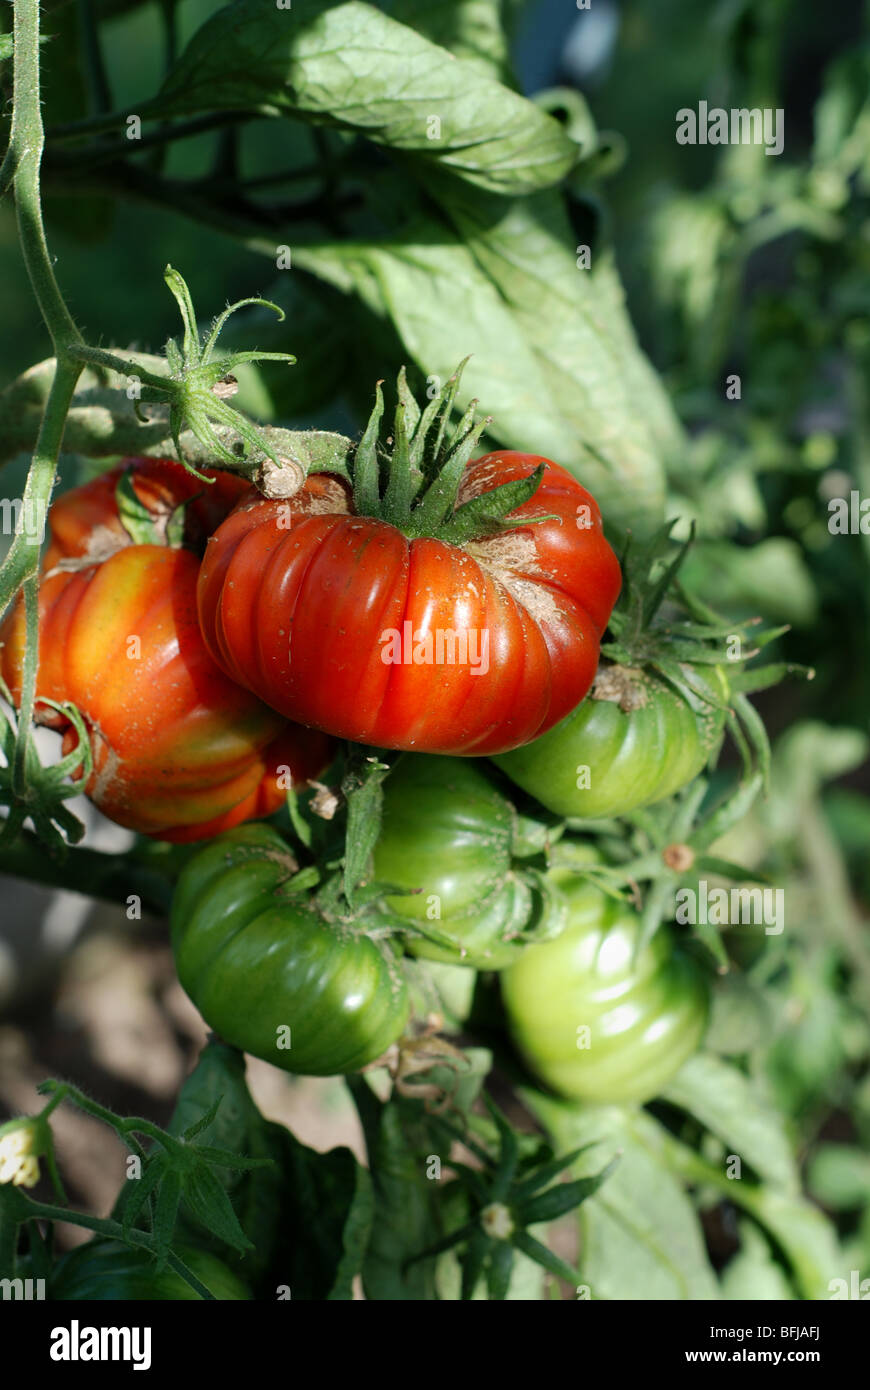 Picking tomatos Stock Photo